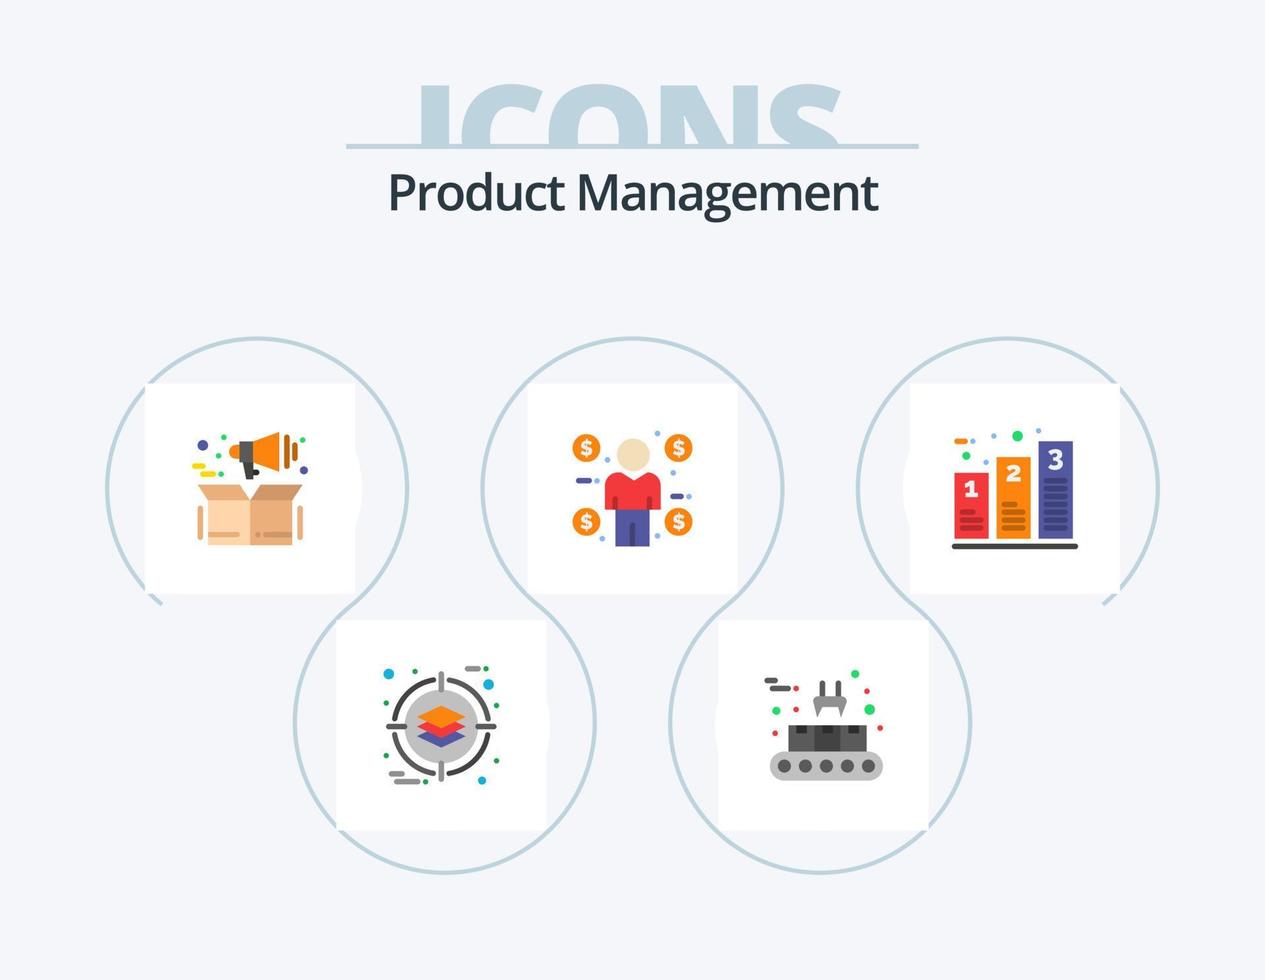 design de ícones do pacote de ícones planos de gerenciamento de produtos 5. gráfico. consumidor. gerenciamento. moeda. negócios vetor